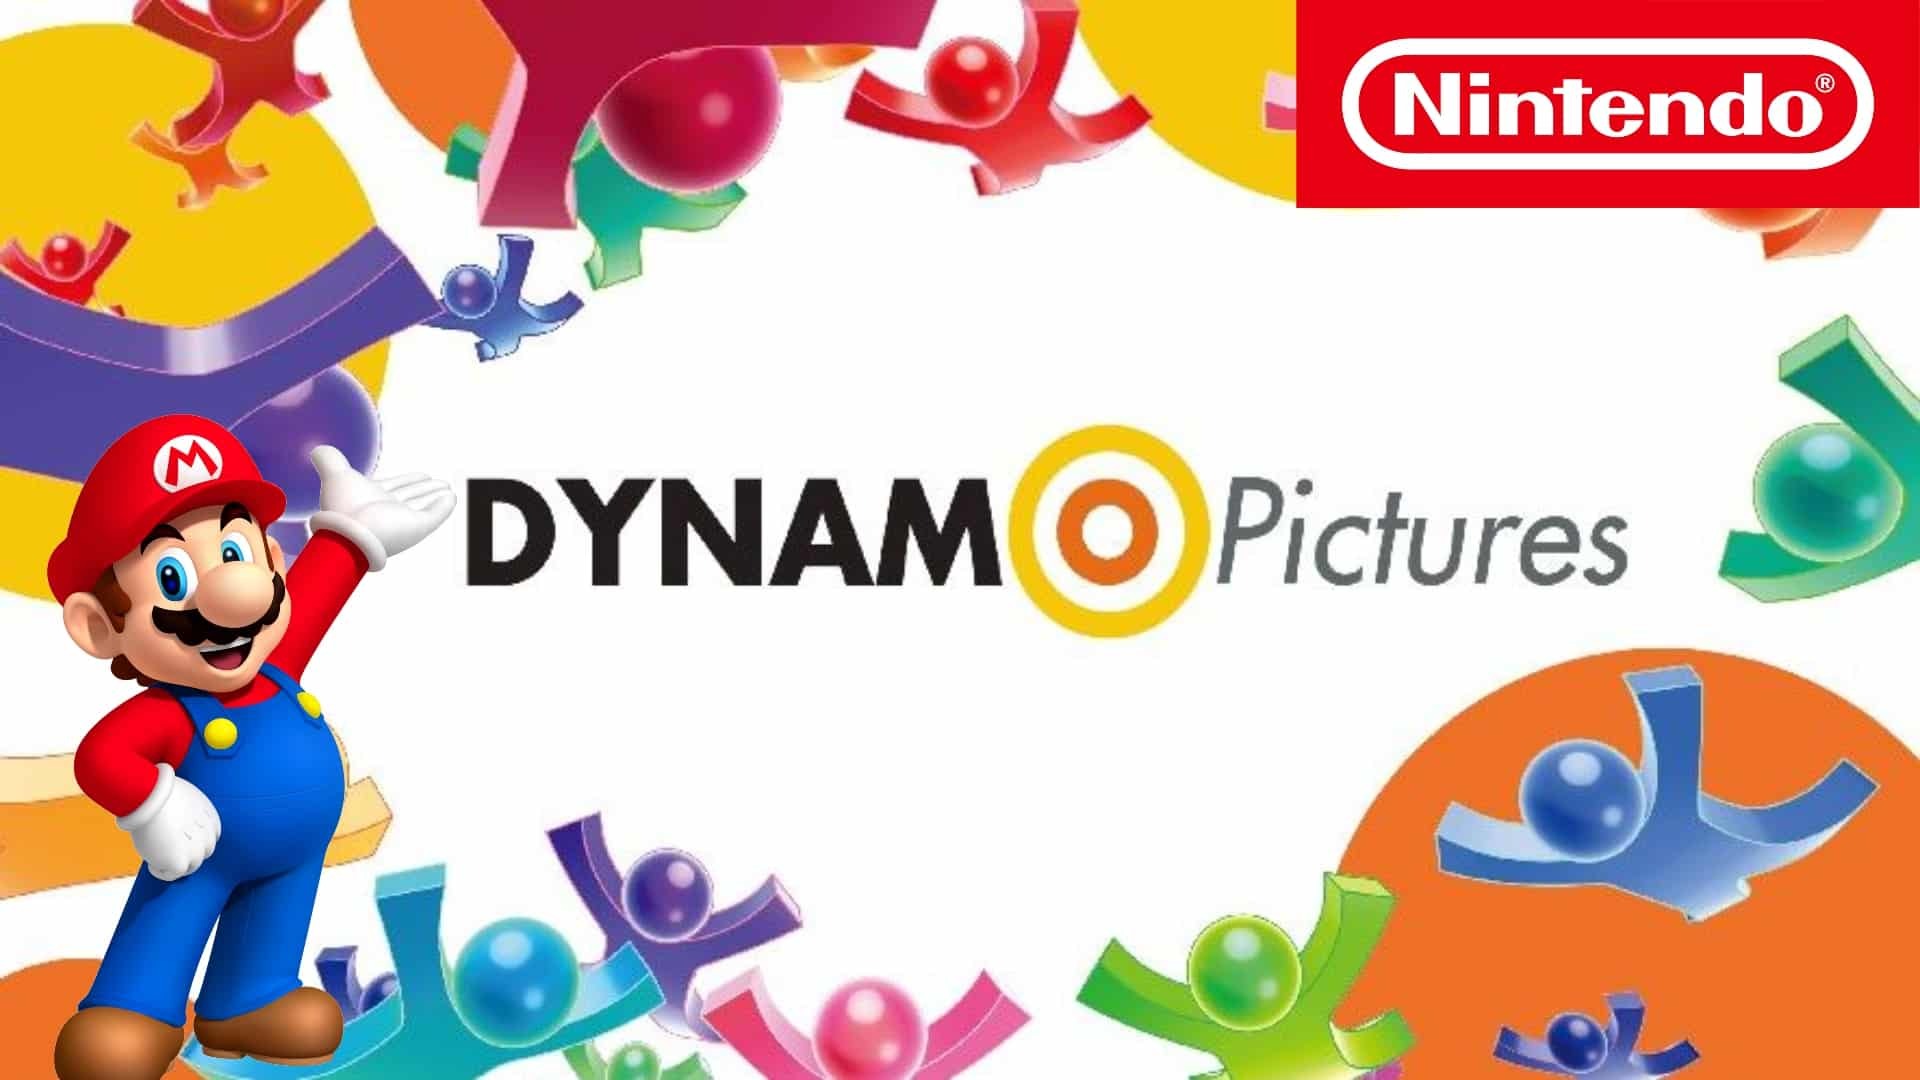 Nintendo Dynamo Pictures đã cho ra mắt những tựa game đình đám như Mario Kart Tour và Animal Crossing: Pocket Camp. Chất lượng đồ họa hoàn thiện, trò chơi nội dung đa dạng, đi cùng với nhạc nền tuyệt vời, Nintendo Dynamo Pictures xứng đáng là một trong những công ty sản xuất game hàng đầu thế giới.